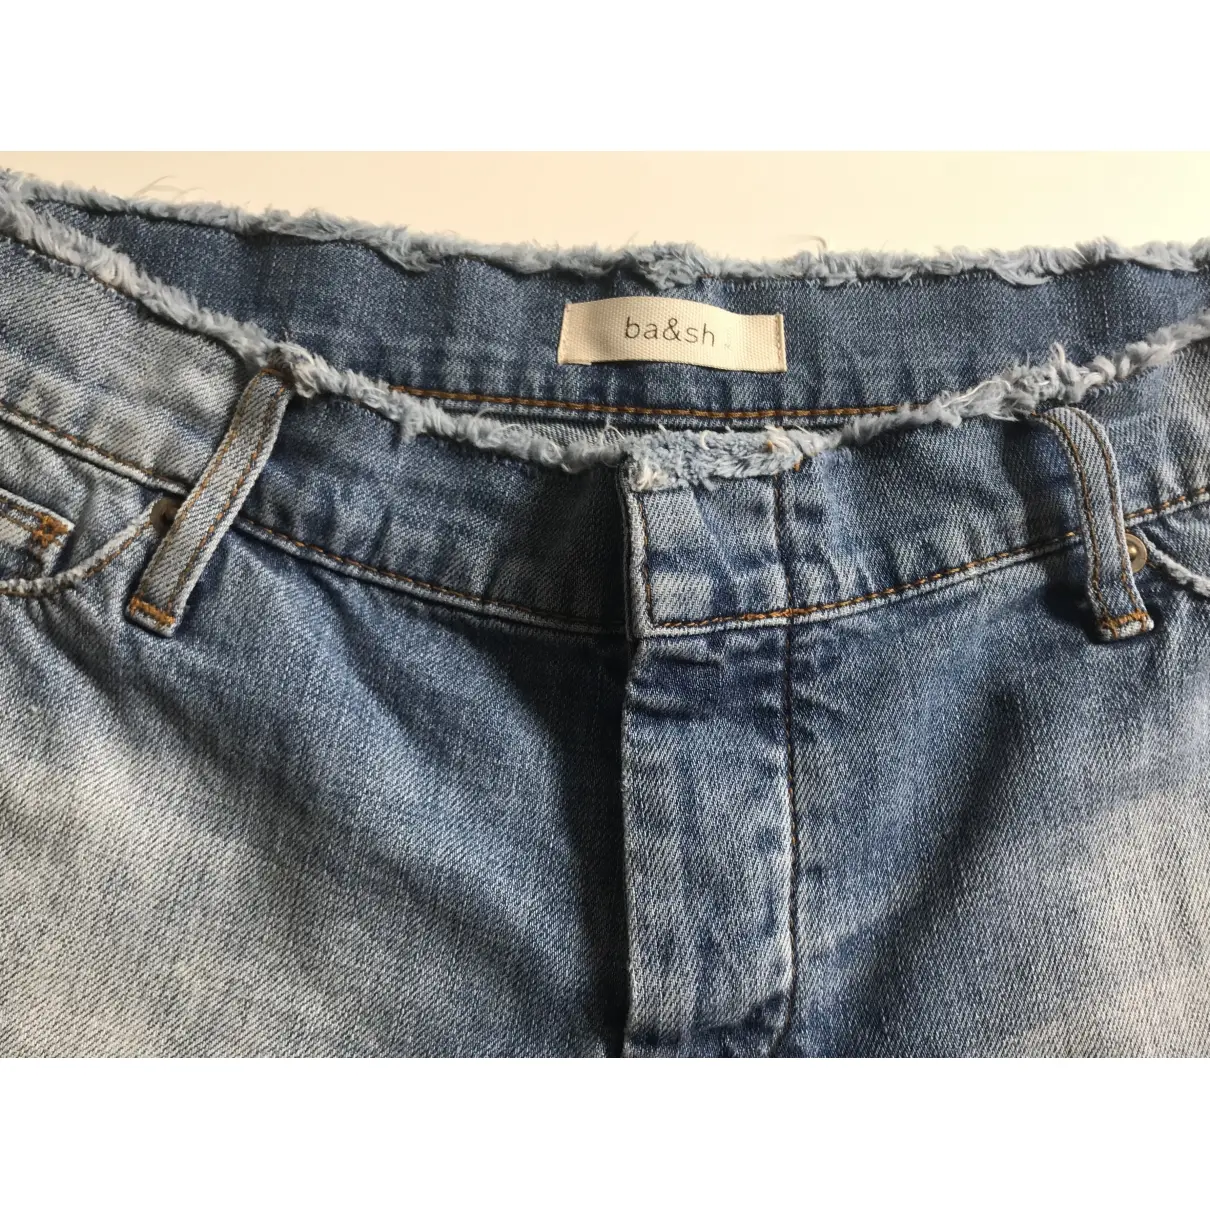 Blue Denim - Jeans Shorts Spring Summer 2019 Ba&sh